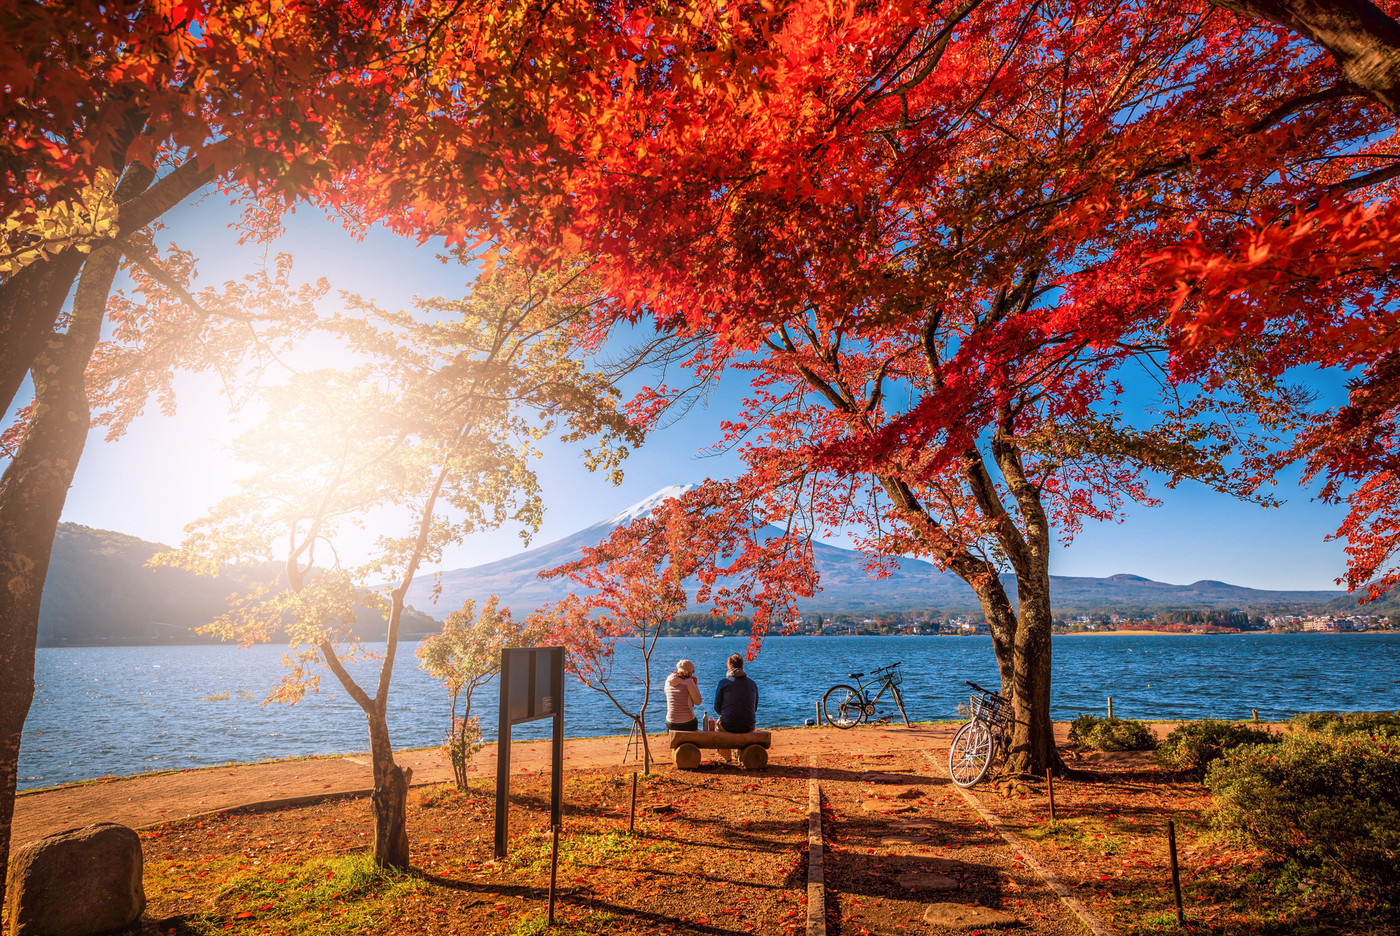 Mt. Fuji over Lake Kawaguchiko with autumn foliage